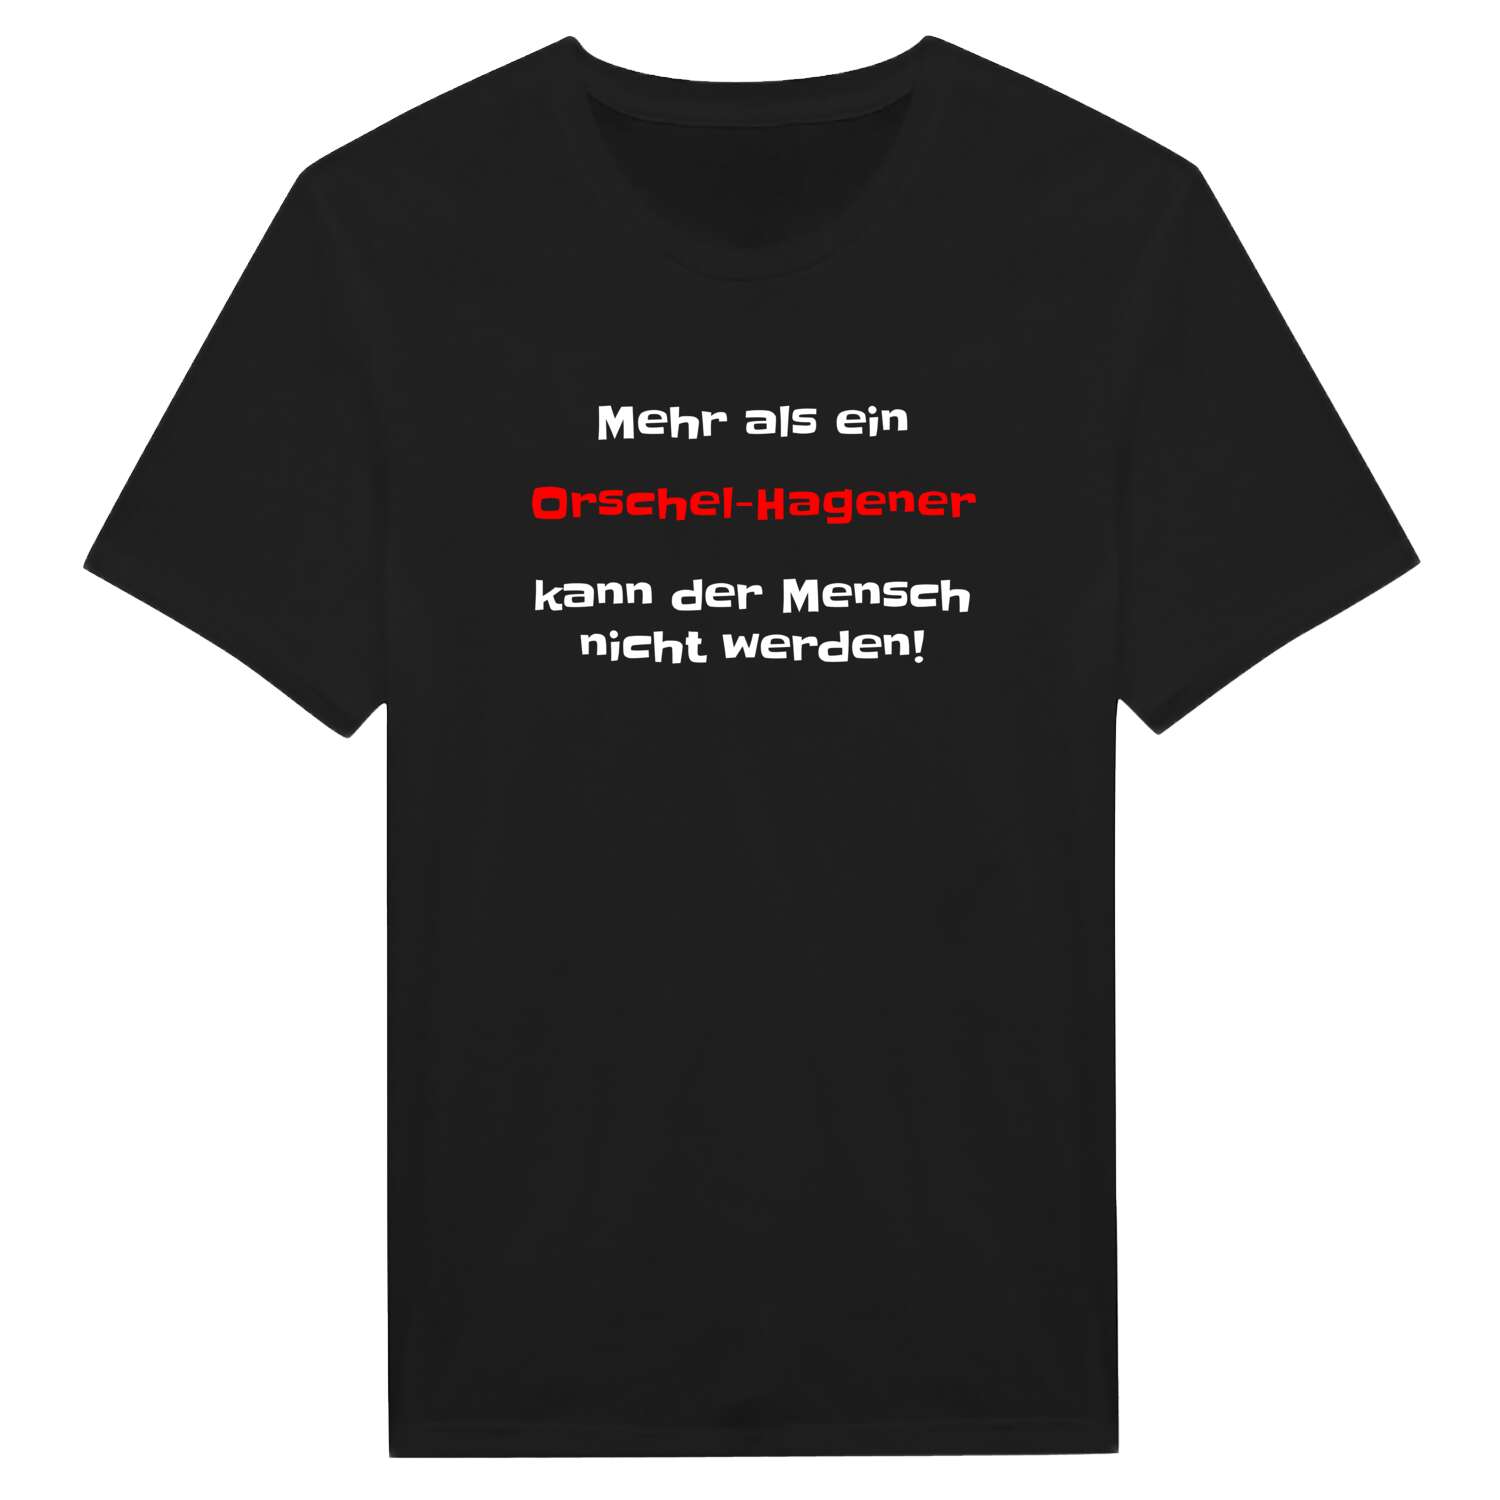 Orschel-Hagen T-Shirt »Mehr als ein«